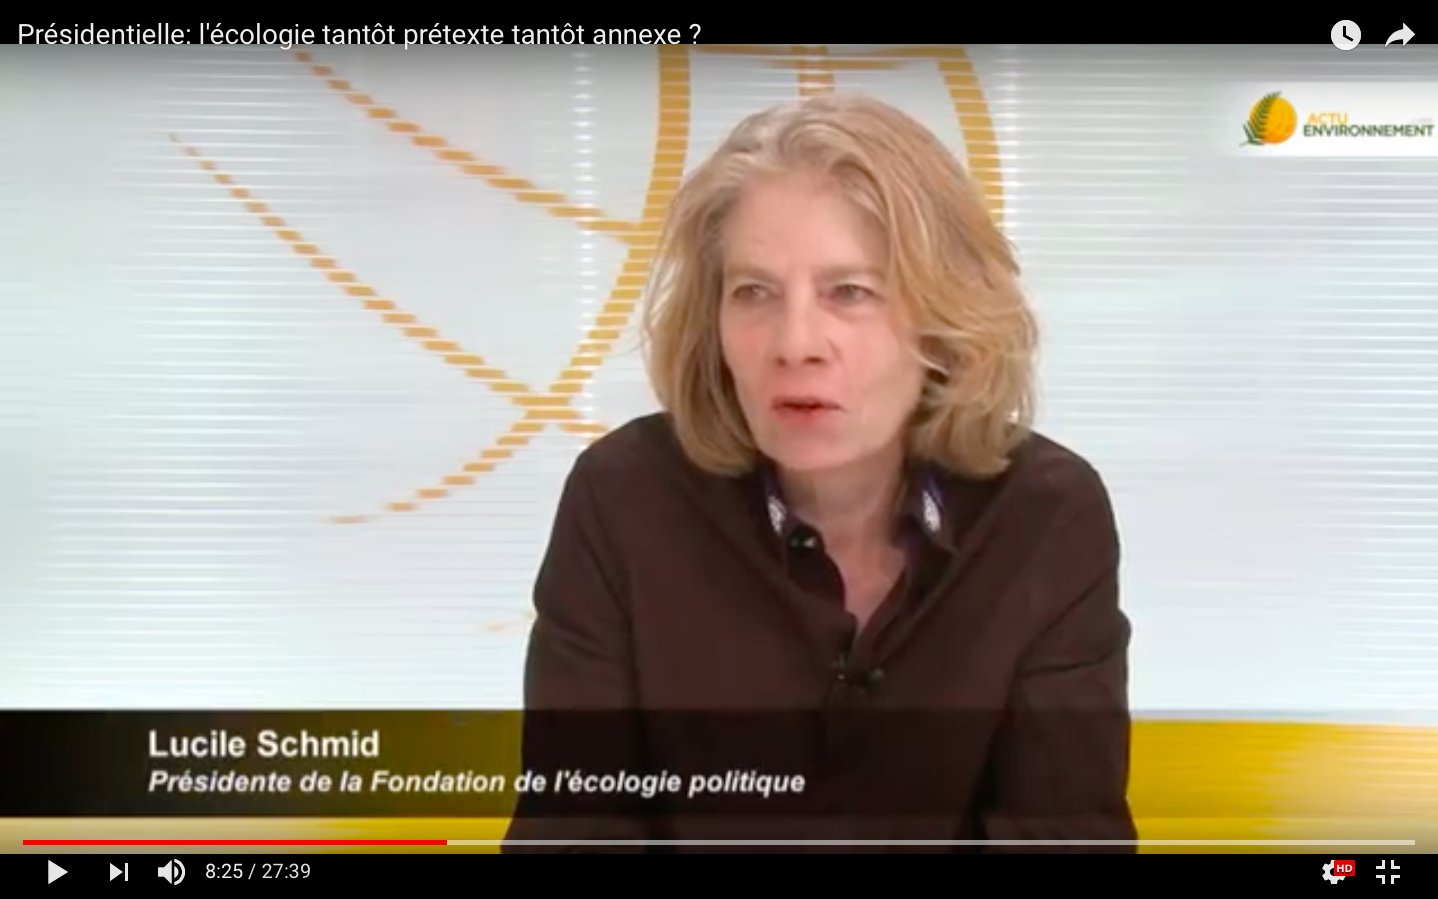 L’écologie dans la présidentielle – Lucile Schmid sur le plateau TV d’Actu Environnement